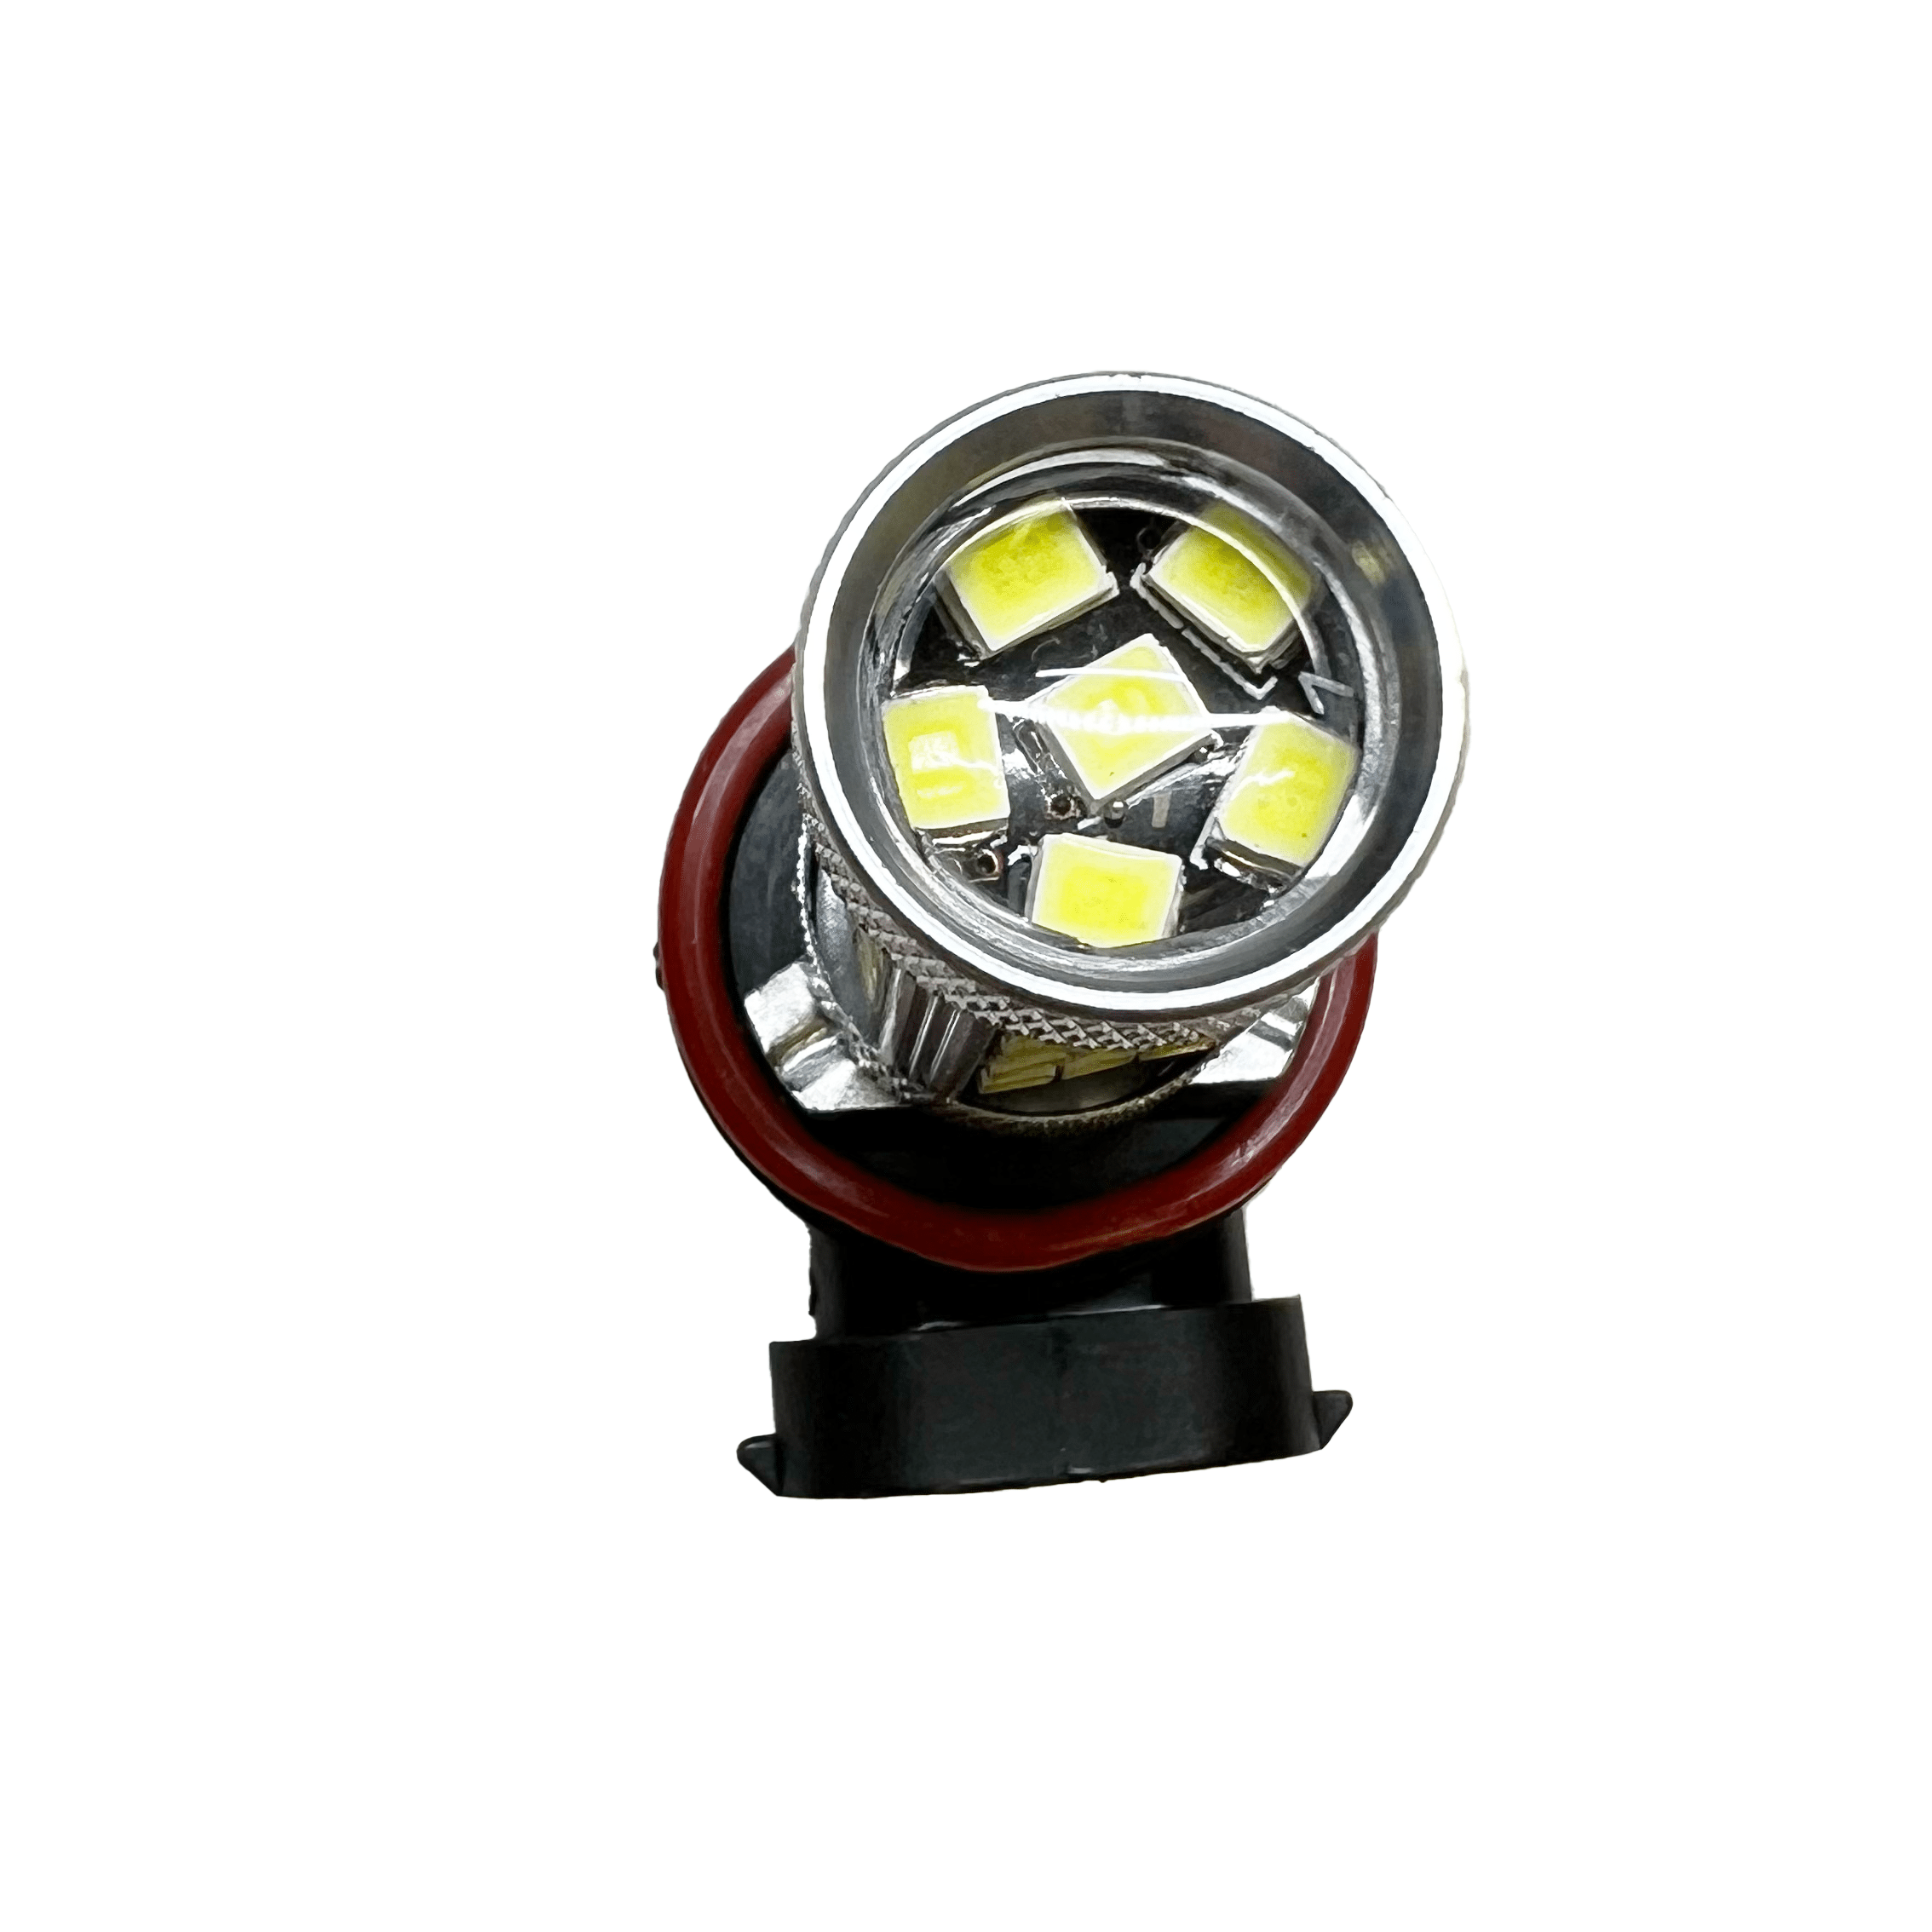 Lámpara LED H11 Moto - Tamaño Mini, potente y ventilada - Entrega gratuita